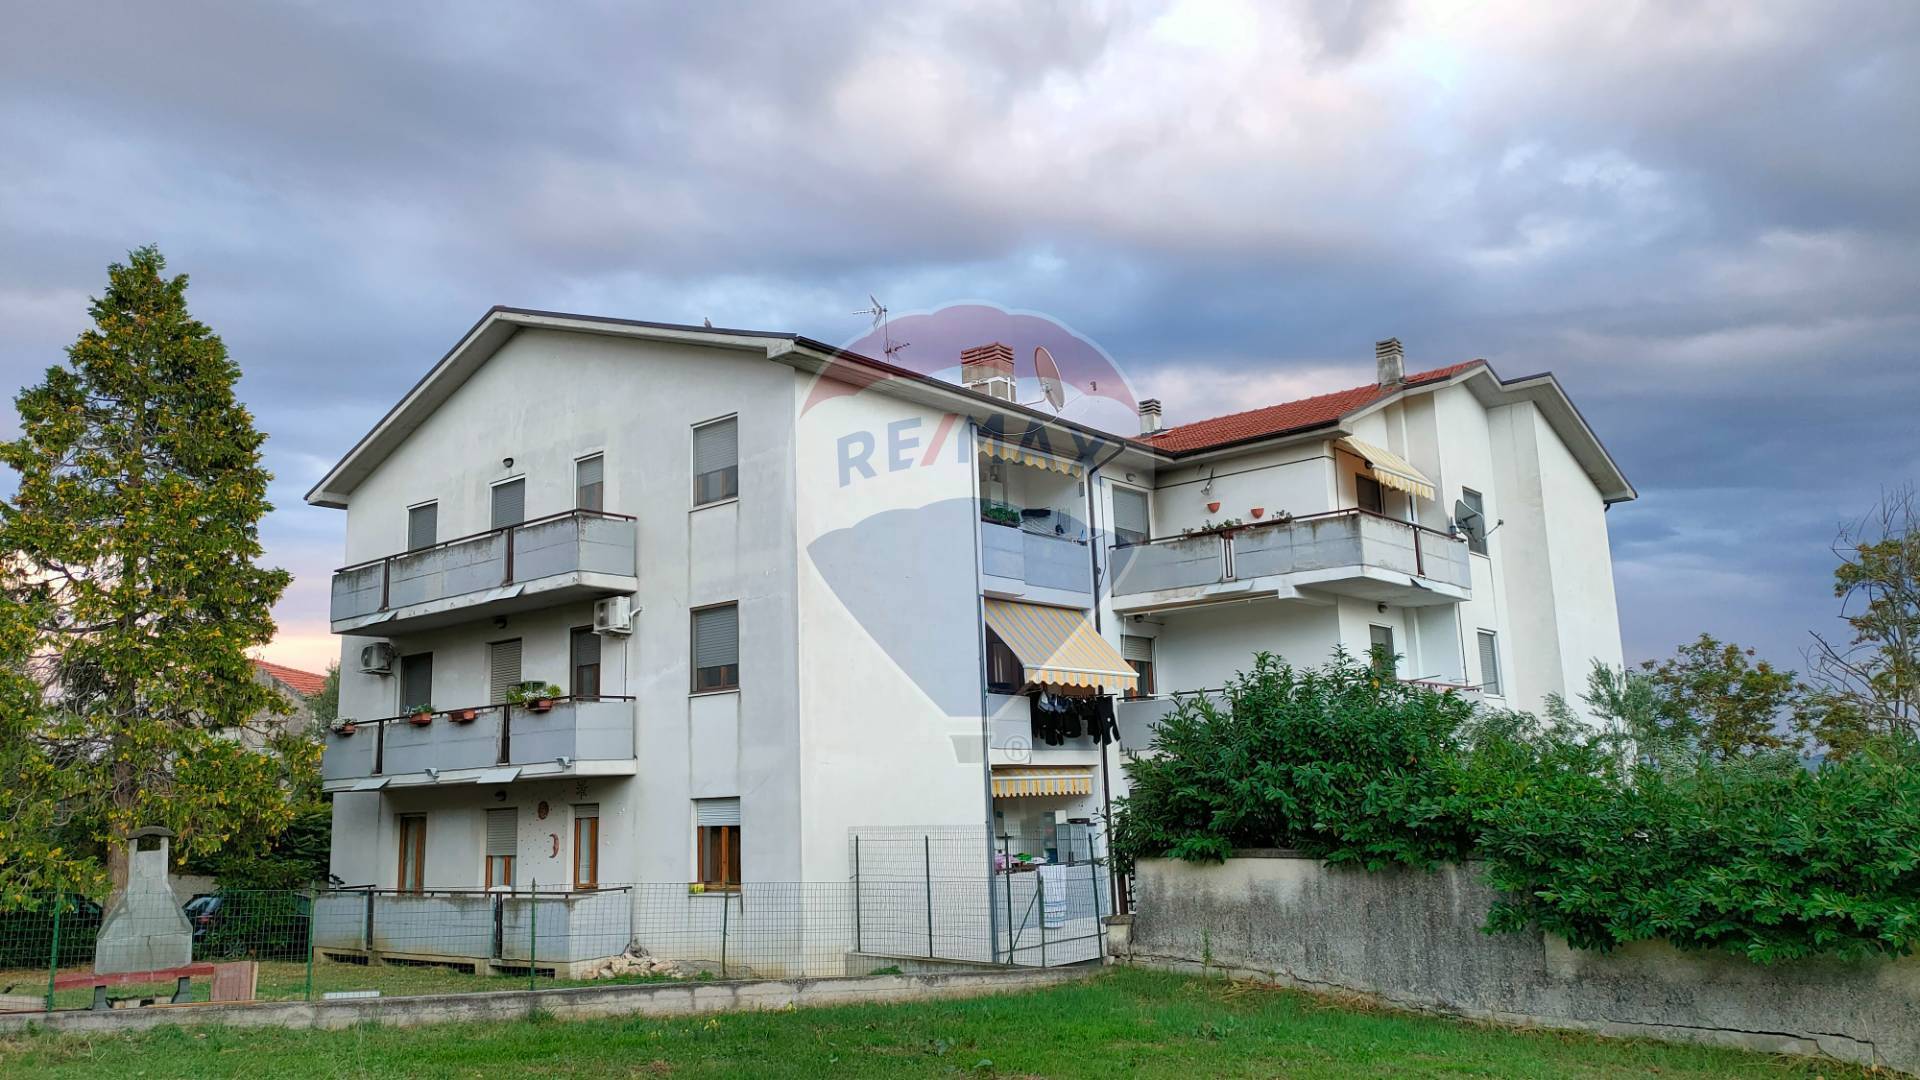 Appartamento in vendita a Paglieta, 6 locali, prezzo € 85.000 | CambioCasa.it